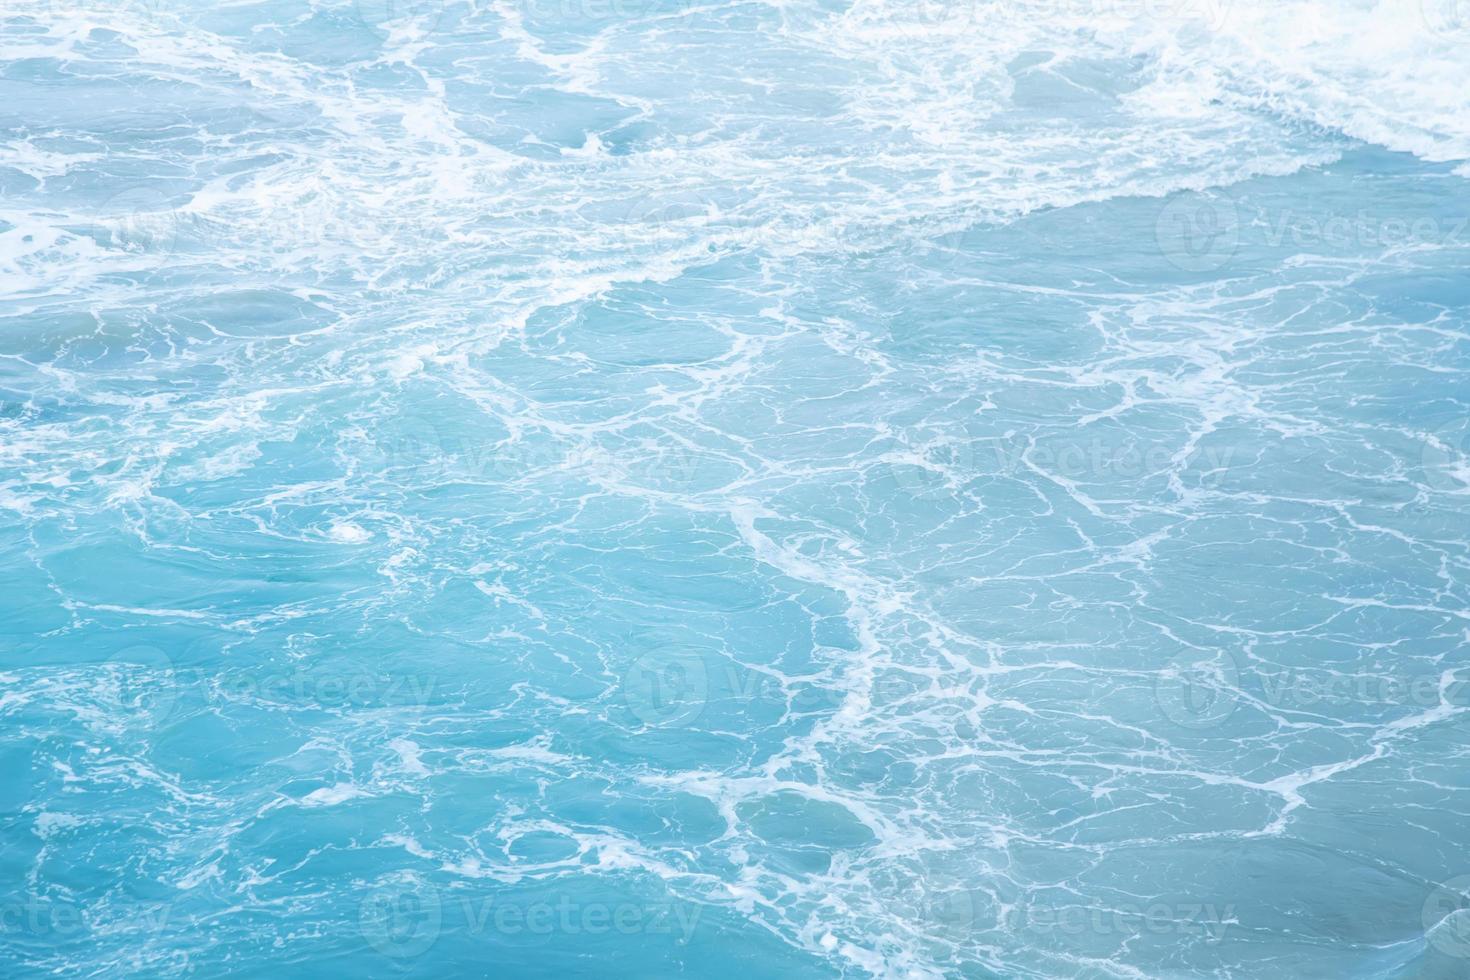 olas del mar en las olas del océano salpicando agua ondulada. fondo de agua azul. deje espacio para escribir texto descriptivo. foto